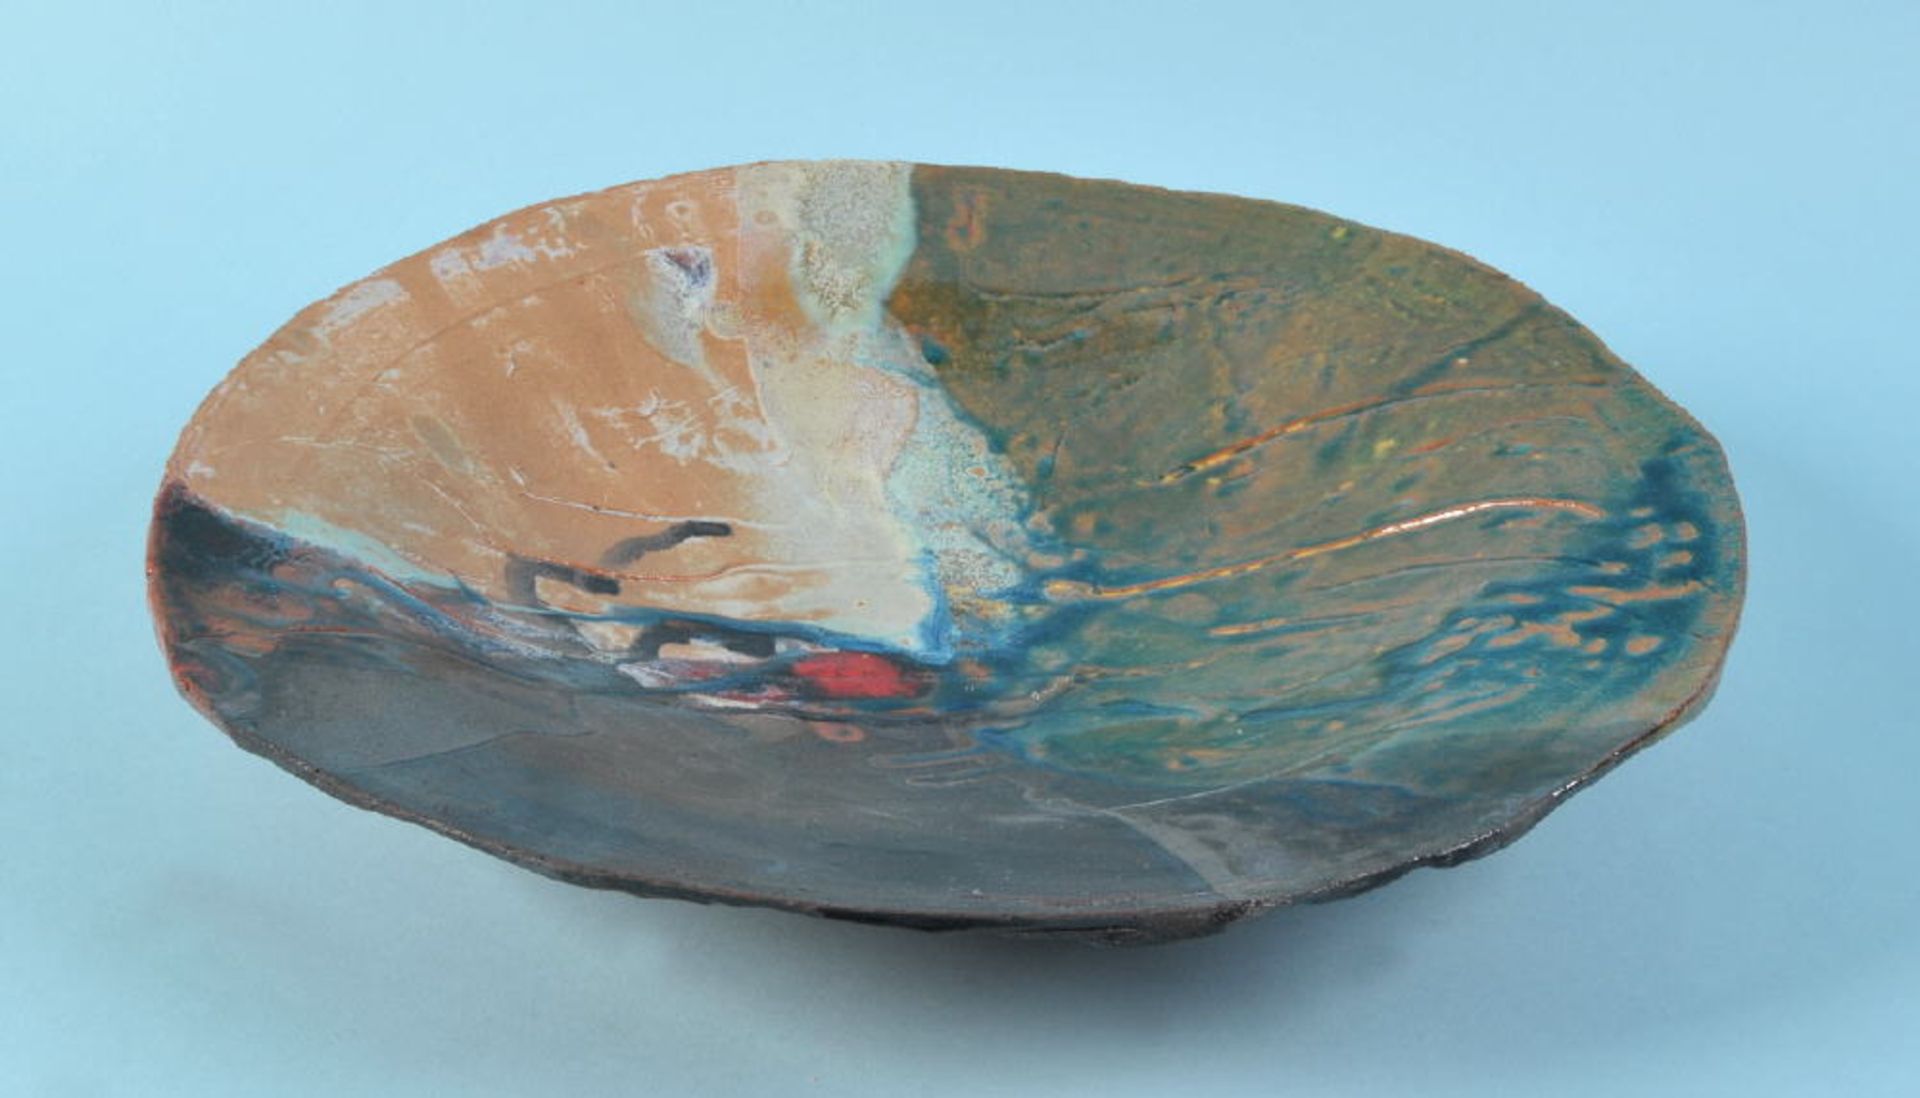 Schale - Künstlerschalegebrannter Ton, mehrfarbige, verlaufende Glasur, D= 38 cm, am Boden